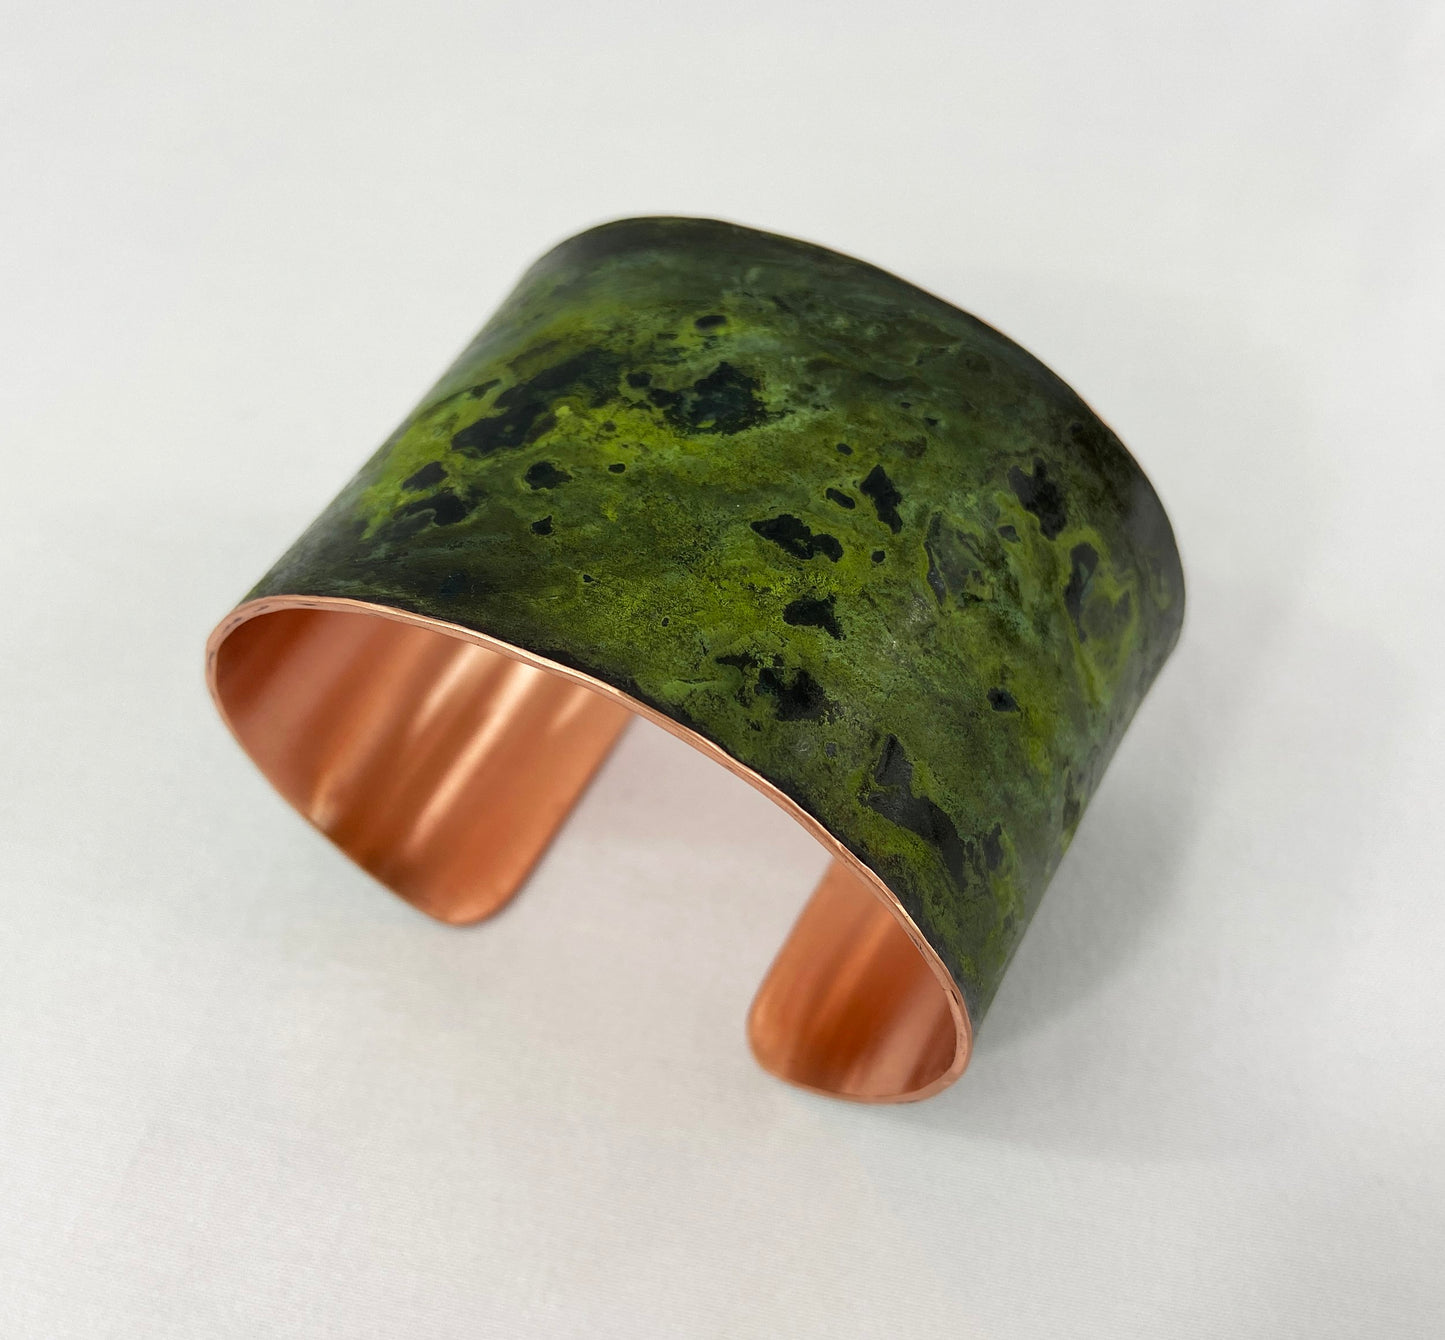 Green Copper Cuff Bracelet